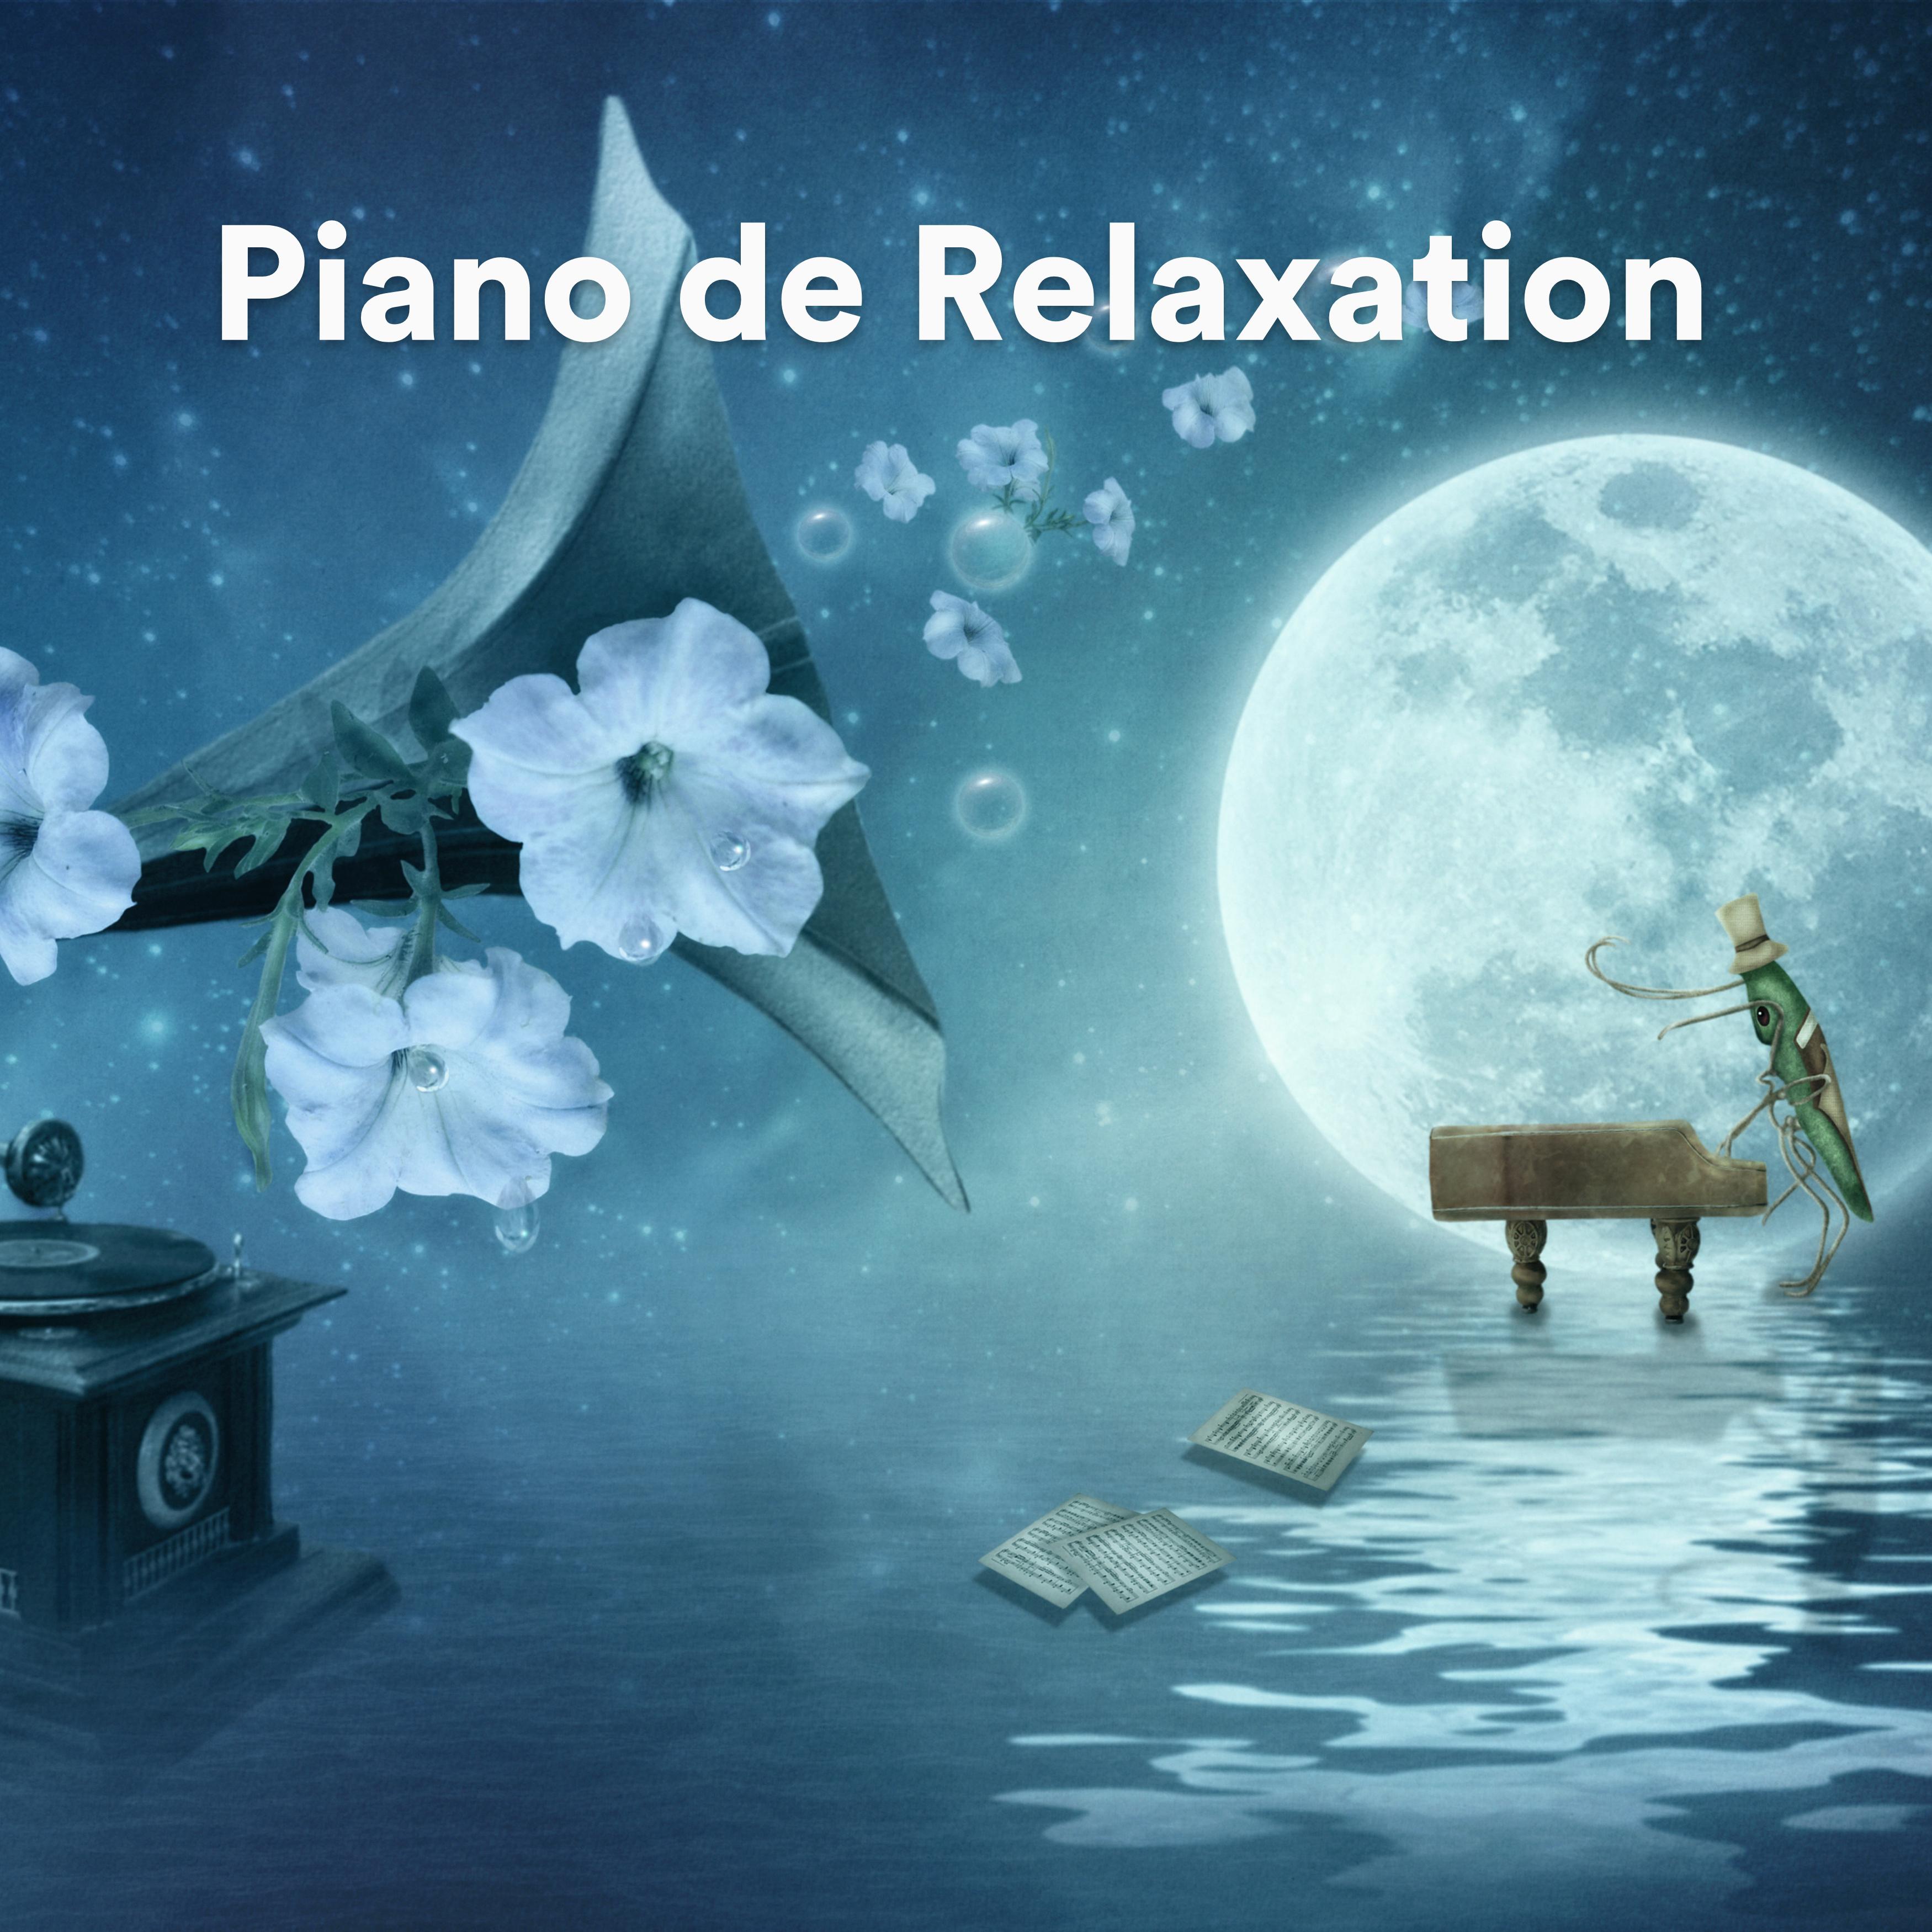 Music for Deep Meditation - Quelques notes de piano